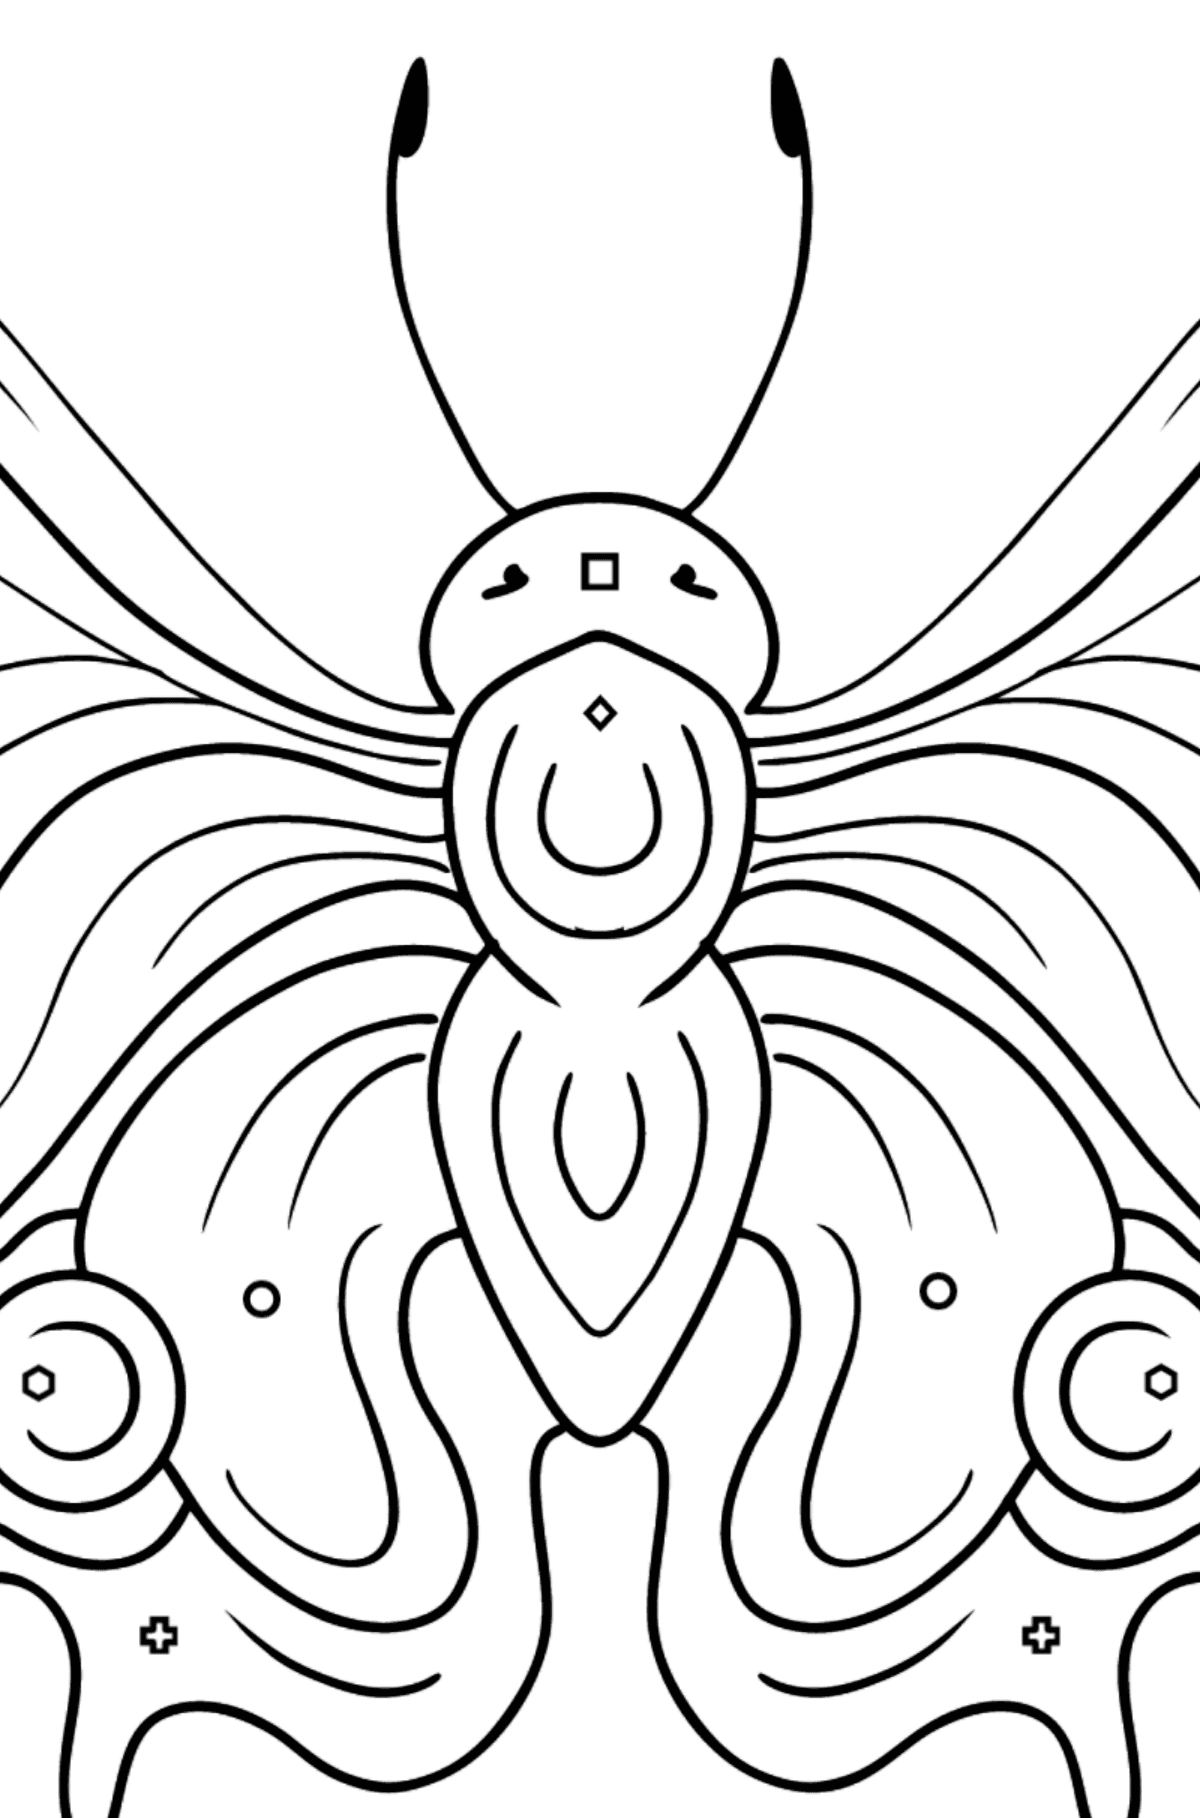 Kleurplaat pauw vlinder - Kleuren met geometrische figuren voor kinderen